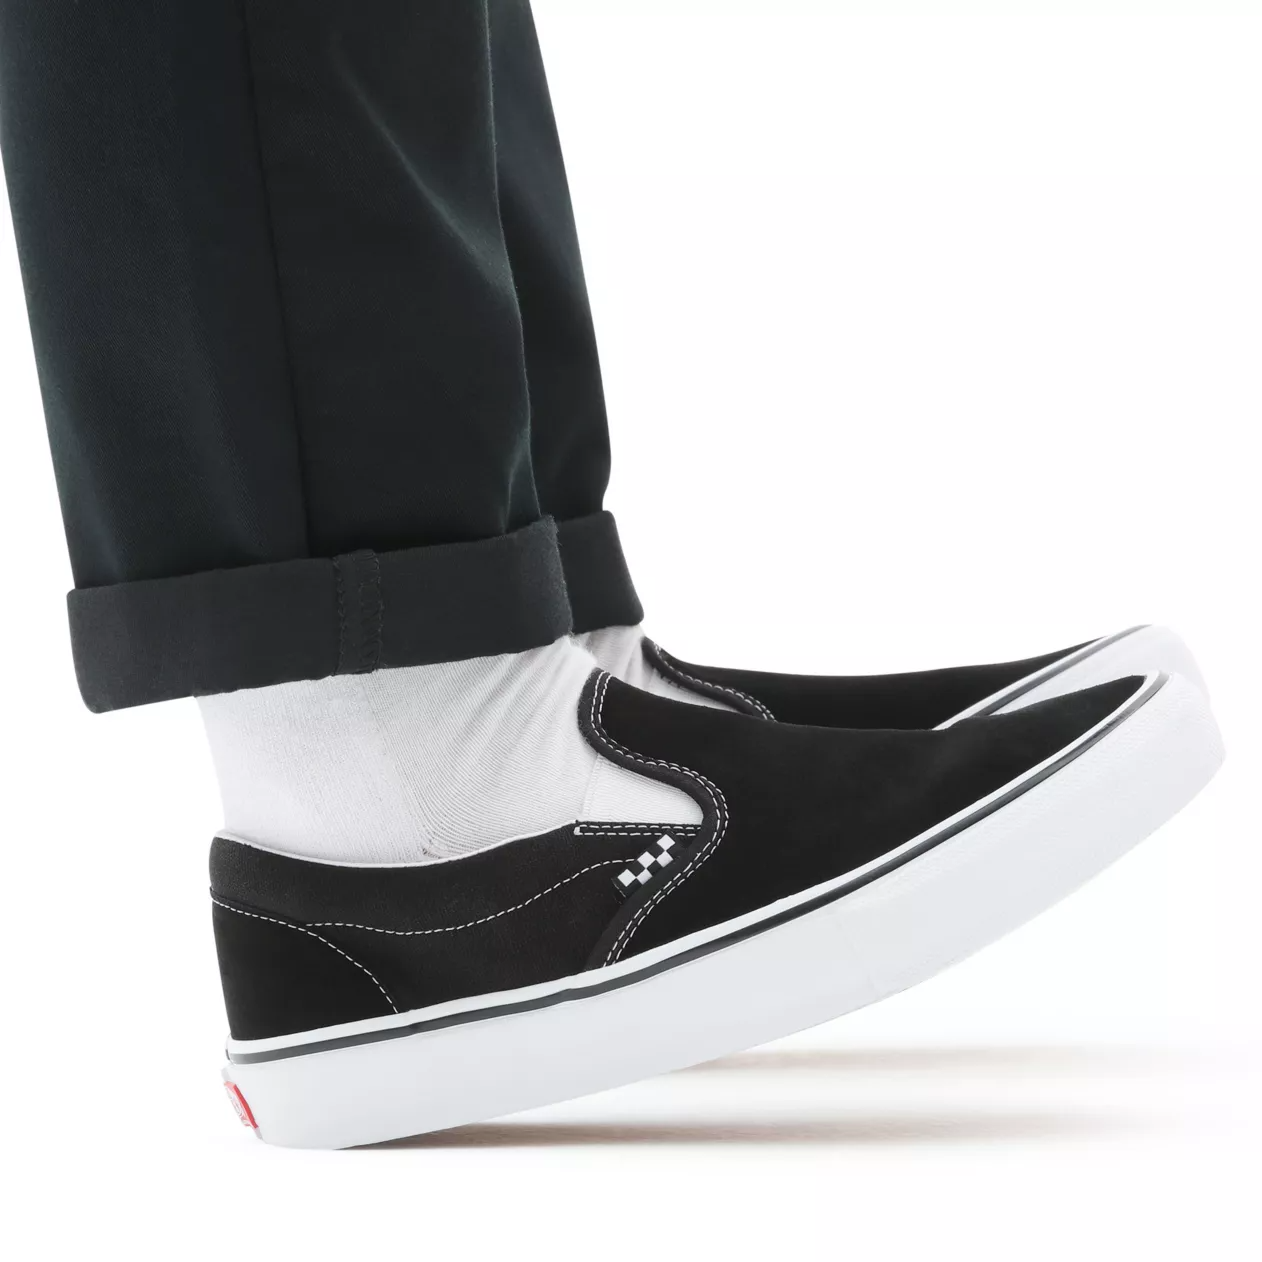 Vans Skate Slip On Shoes - Black/White